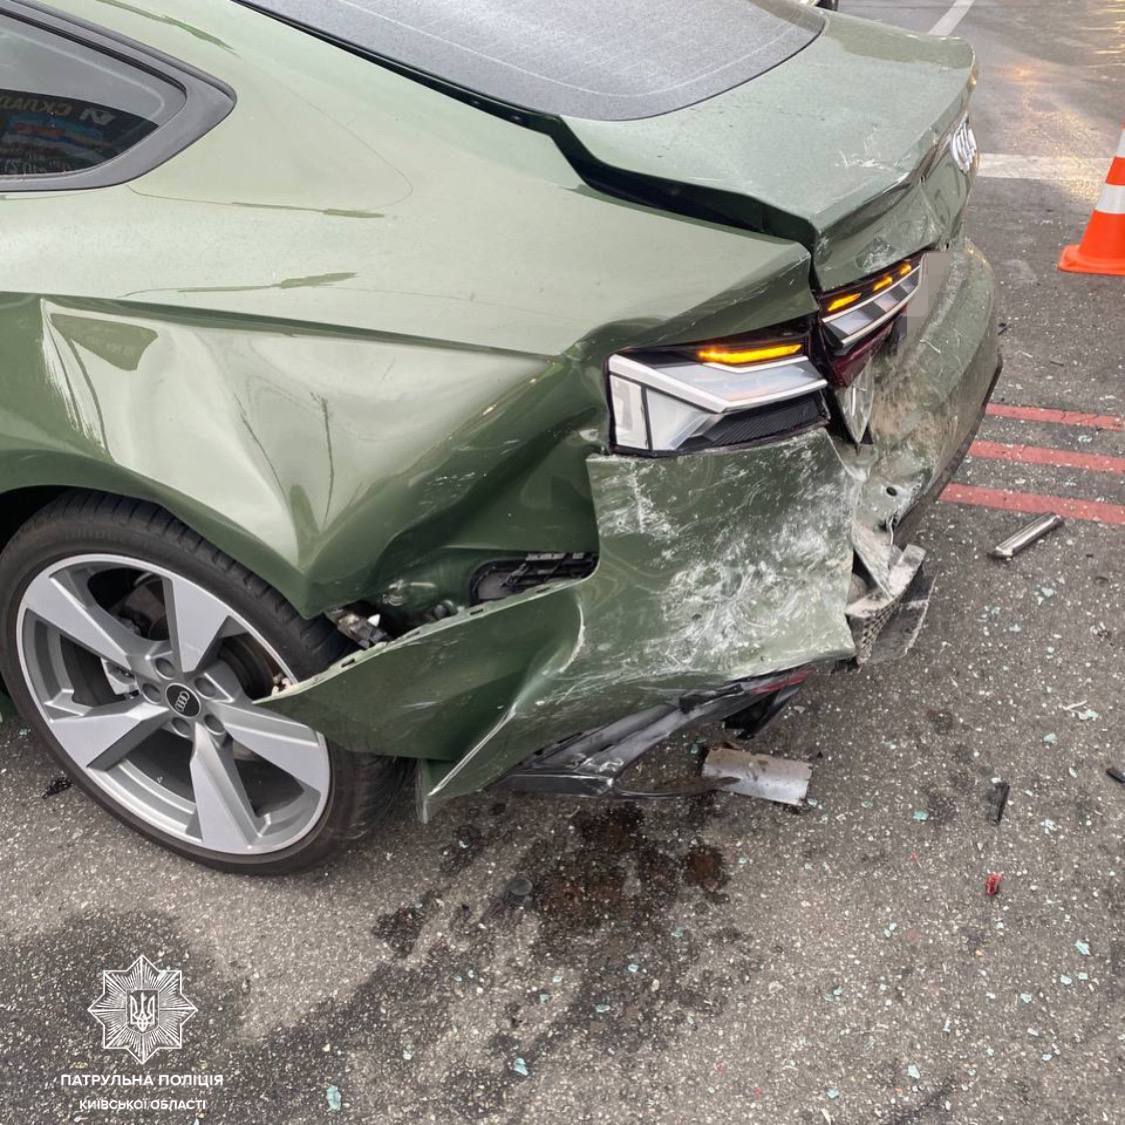 Под Киевом пьяный водитель Opel протаранил легковушку и въехал в столб. Фото